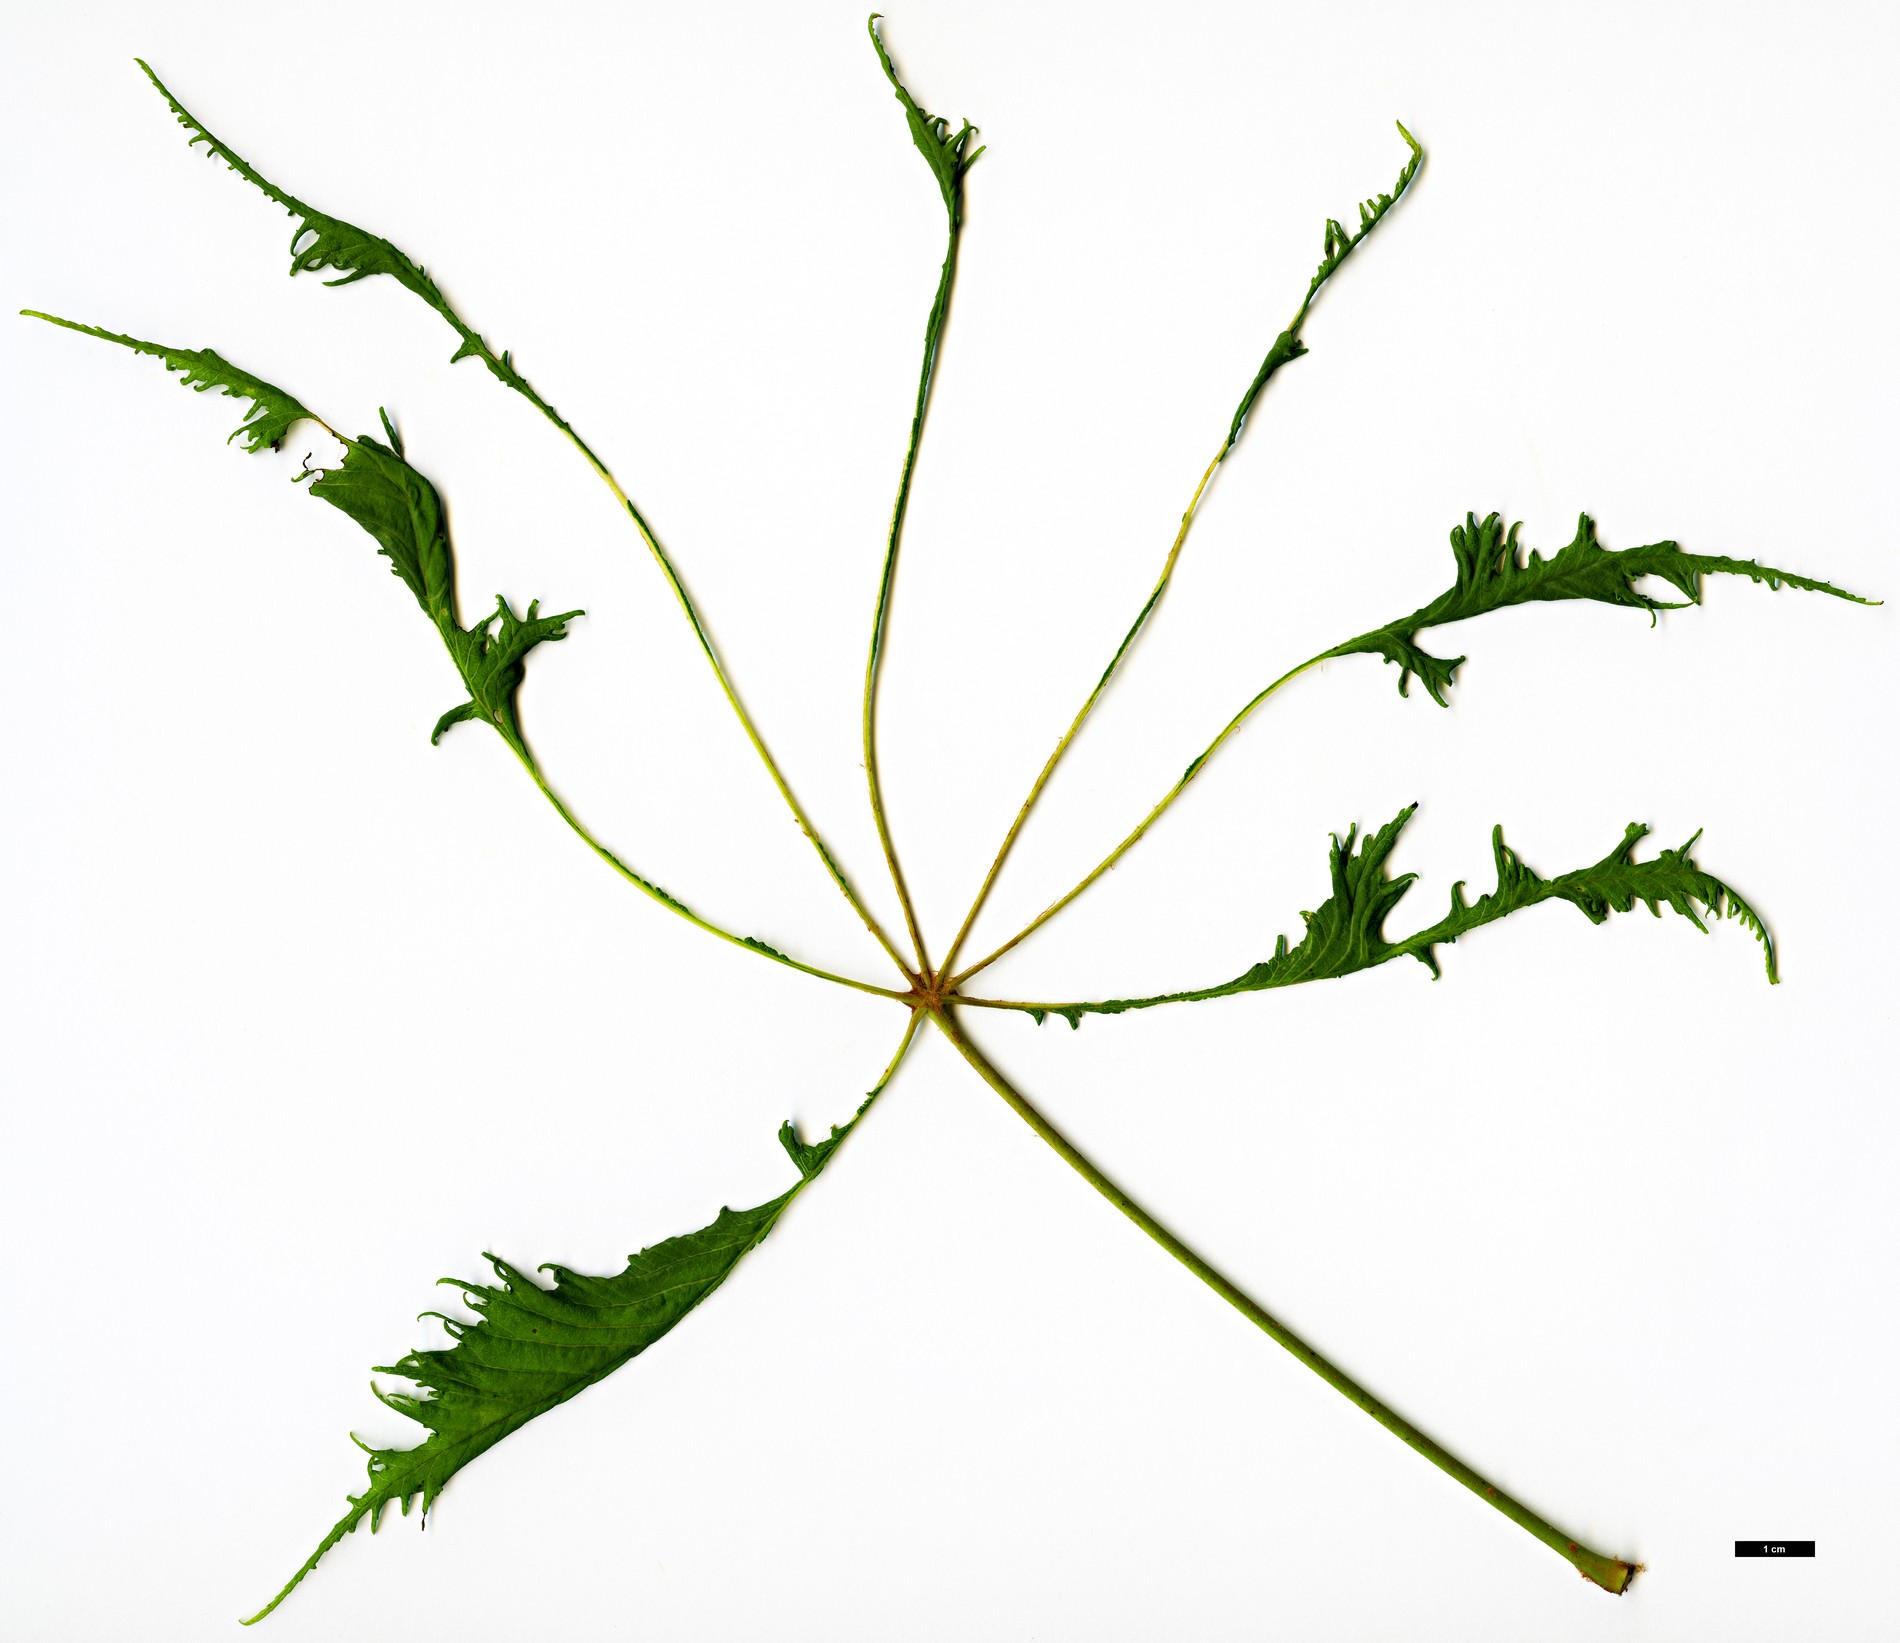 High resolution image: Family: Sapindaceae - Genus: Aesculus - Taxon: hippocastanum - SpeciesSub: 'Laciniata'